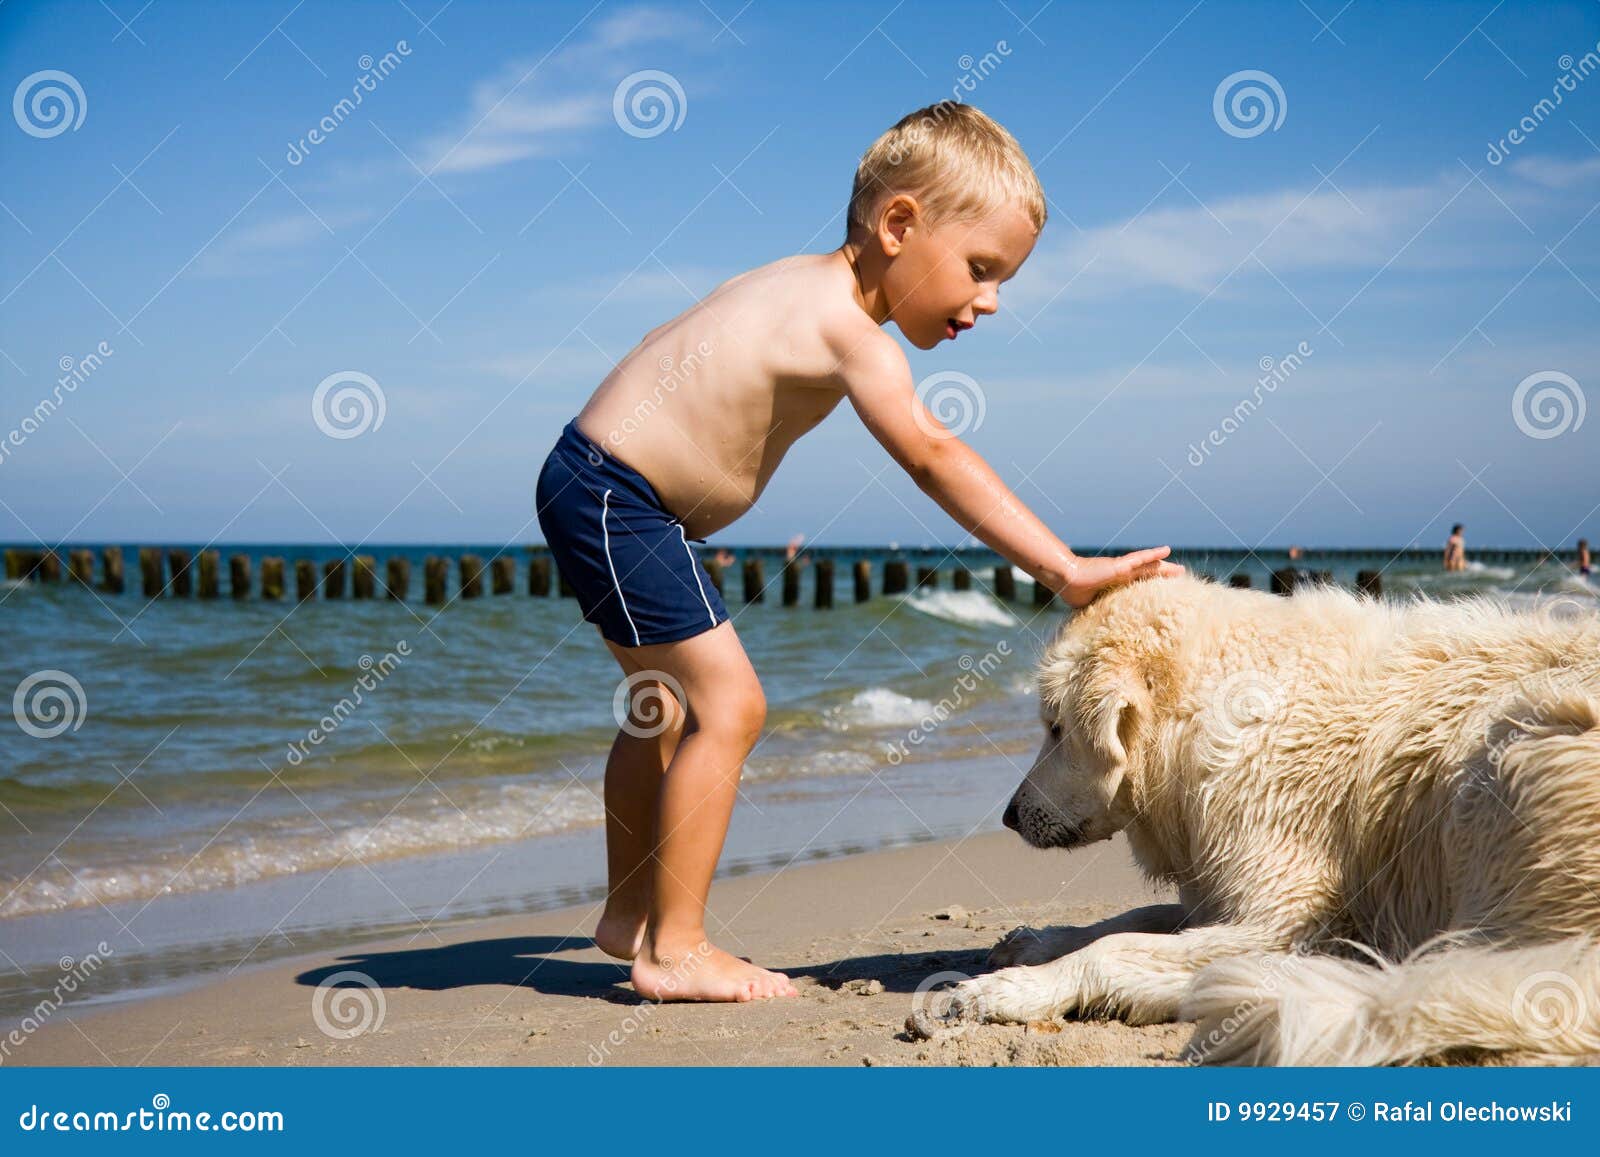 海滩男孩狗作用. 海滩男孩狗演奏小